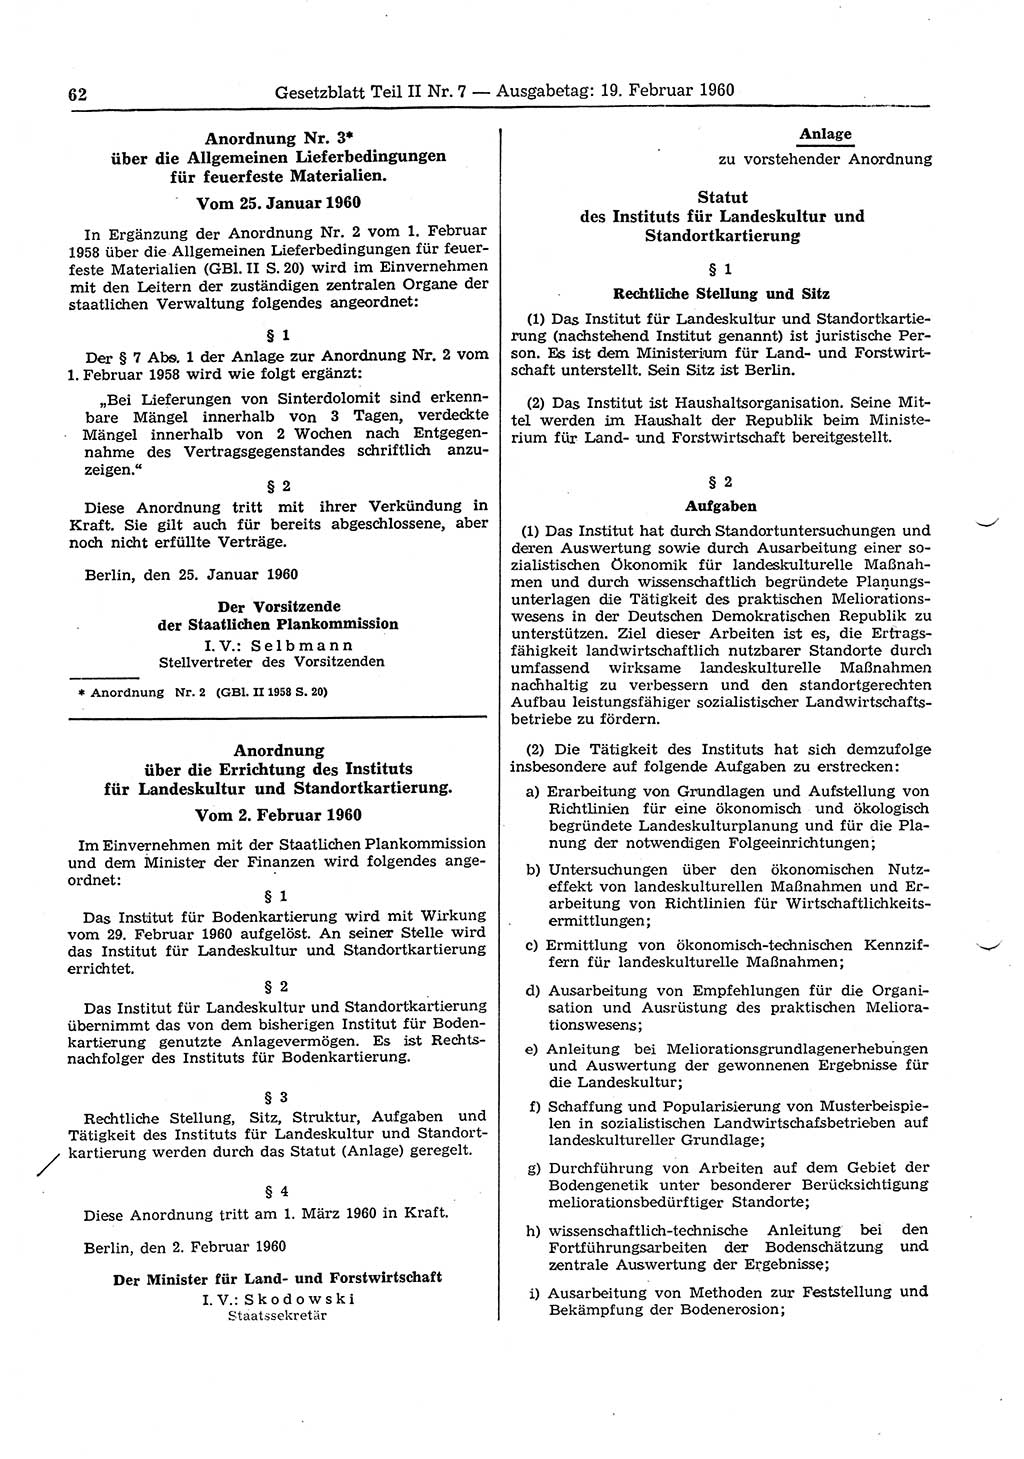 Gesetzblatt (GBl.) der Deutschen Demokratischen Republik (DDR) Teil ⅠⅠ 1960, Seite 62 (GBl. DDR ⅠⅠ 1960, S. 62)